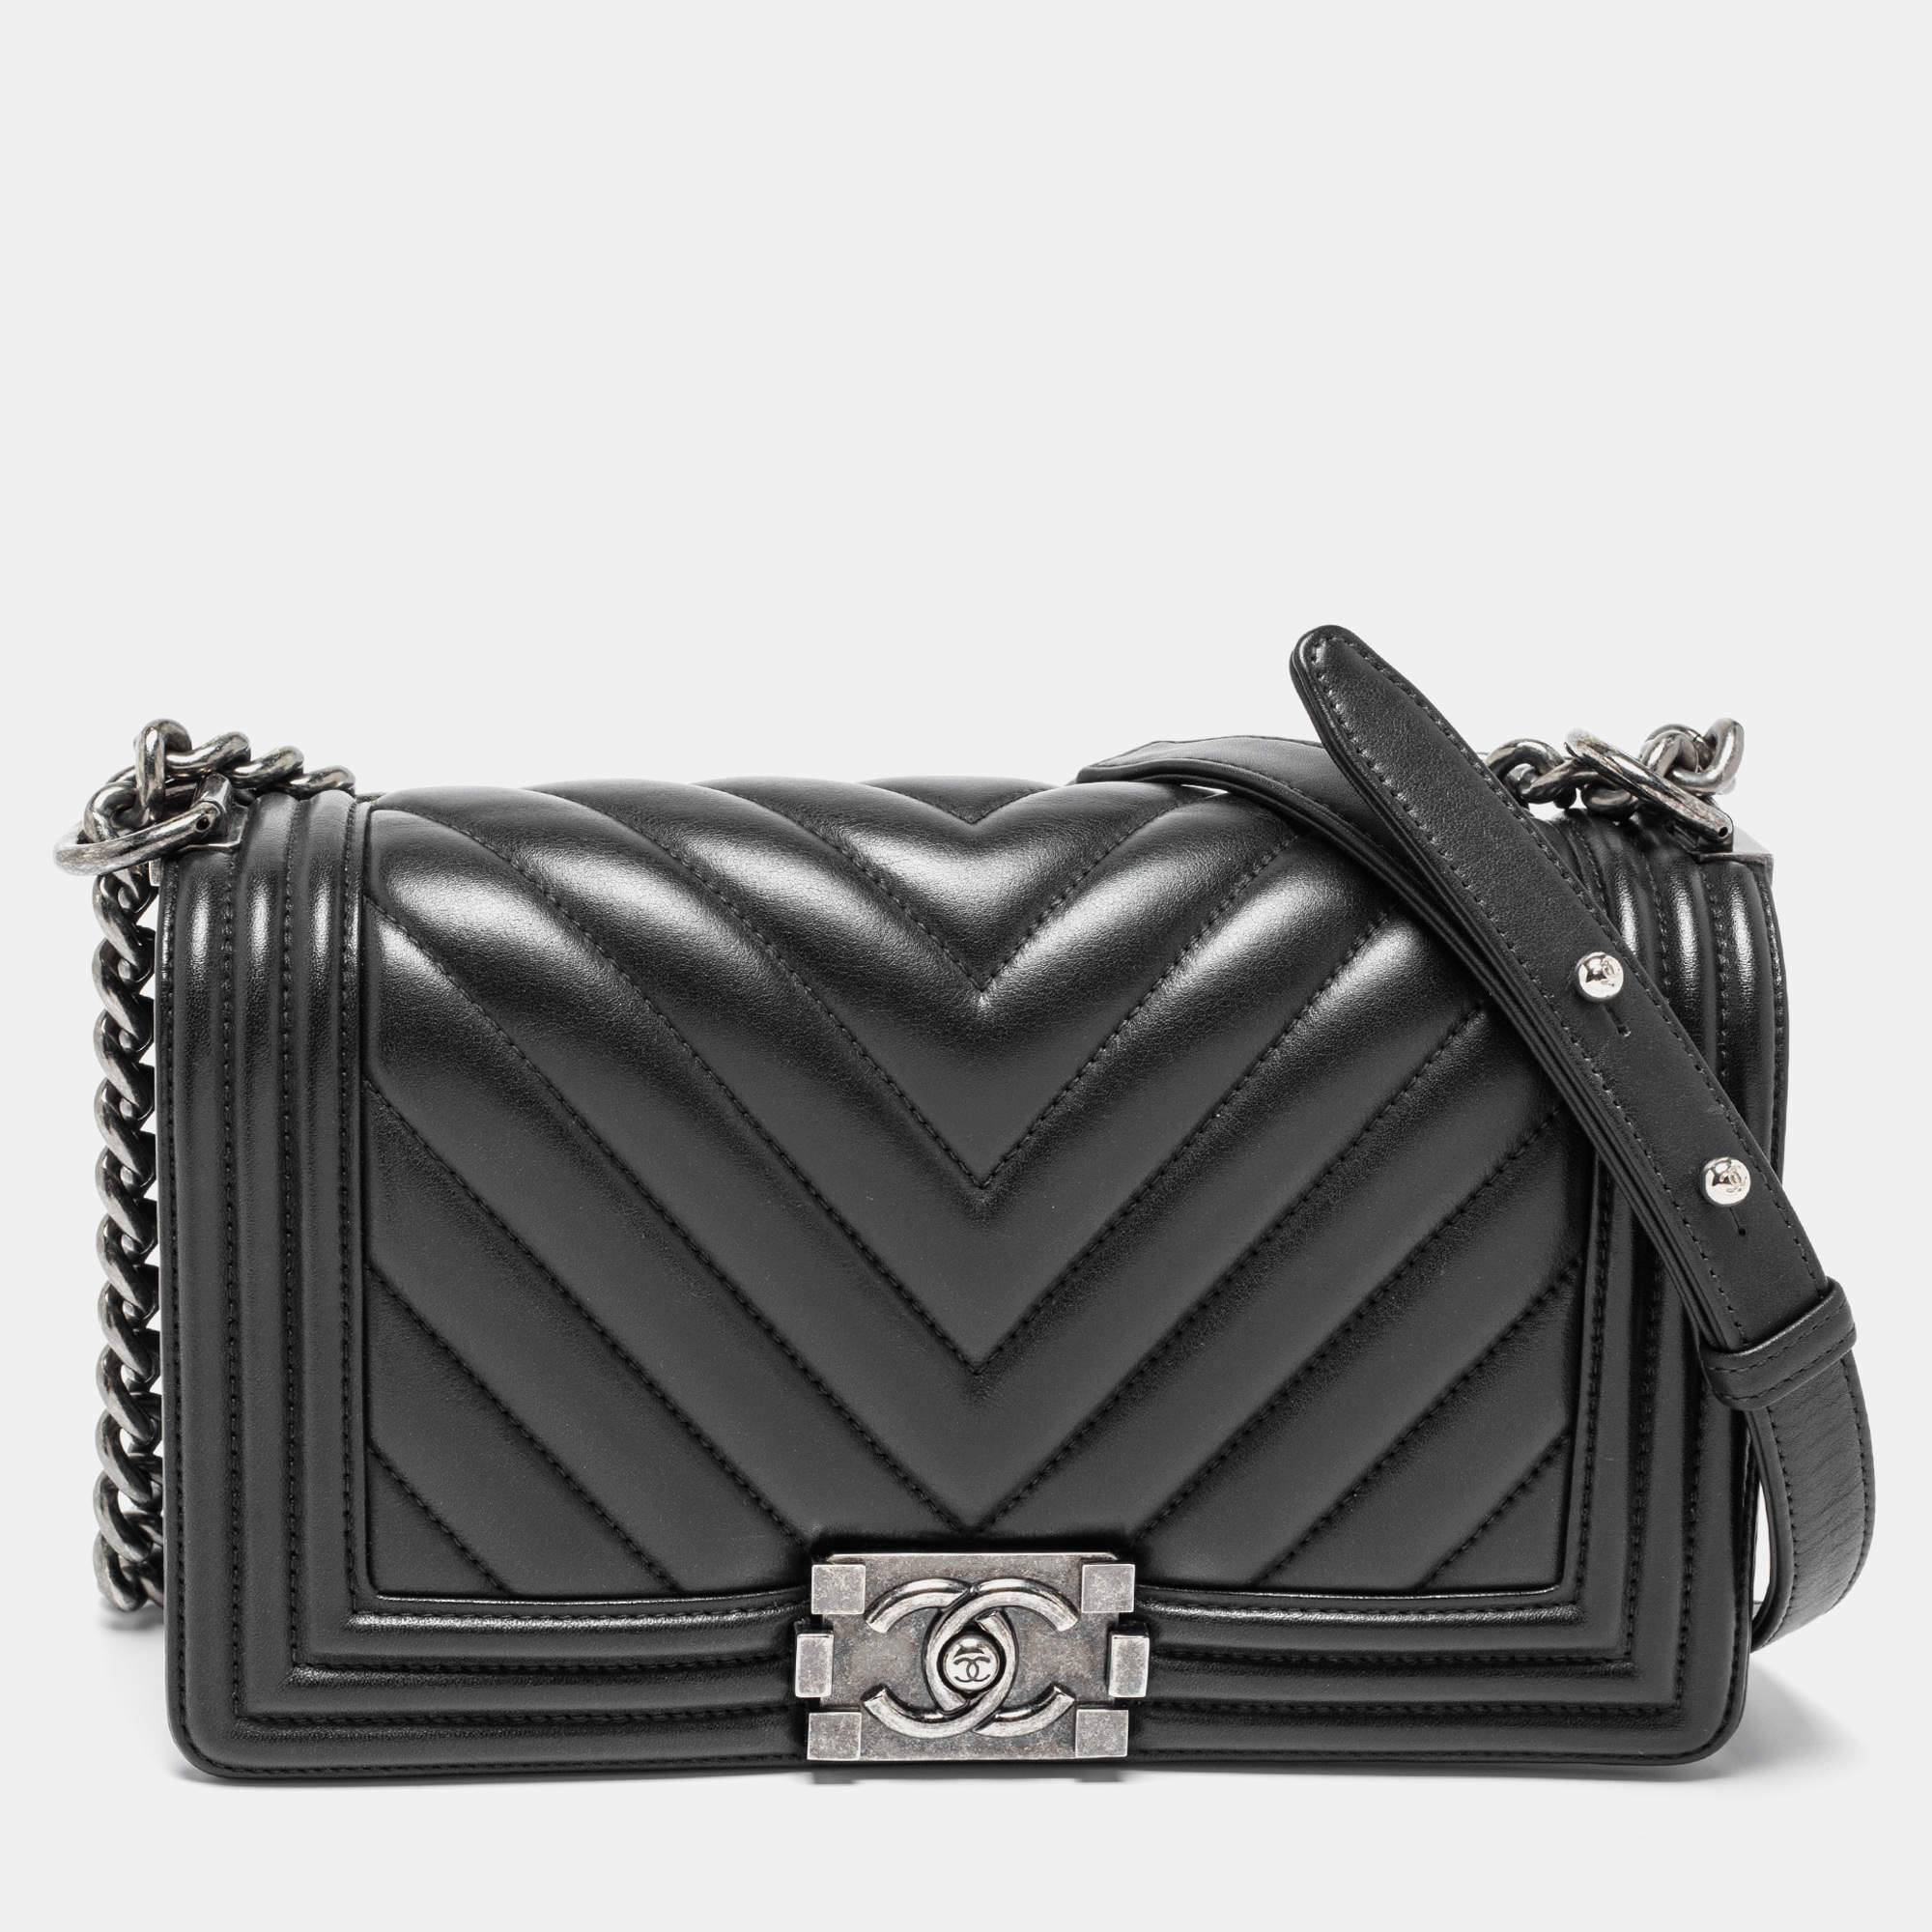 Chanel Black Chevron Leather Medium Boy Flap Bag Chanel